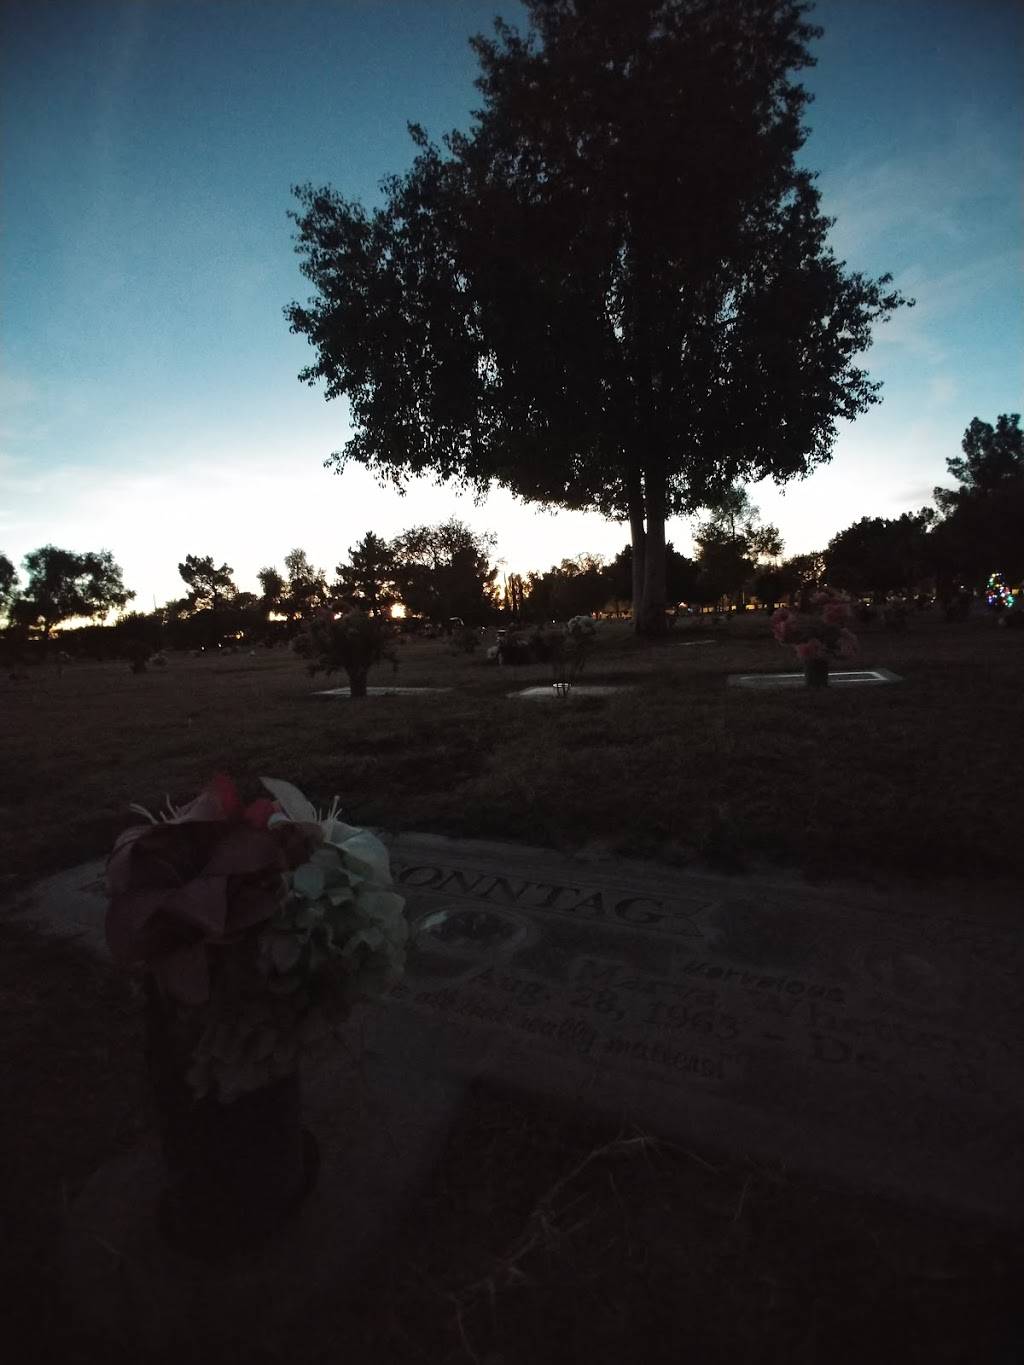 Mesa Cemetery | 1212 N Center St, Mesa, AZ 85201, USA | Phone: (480) 644-2335